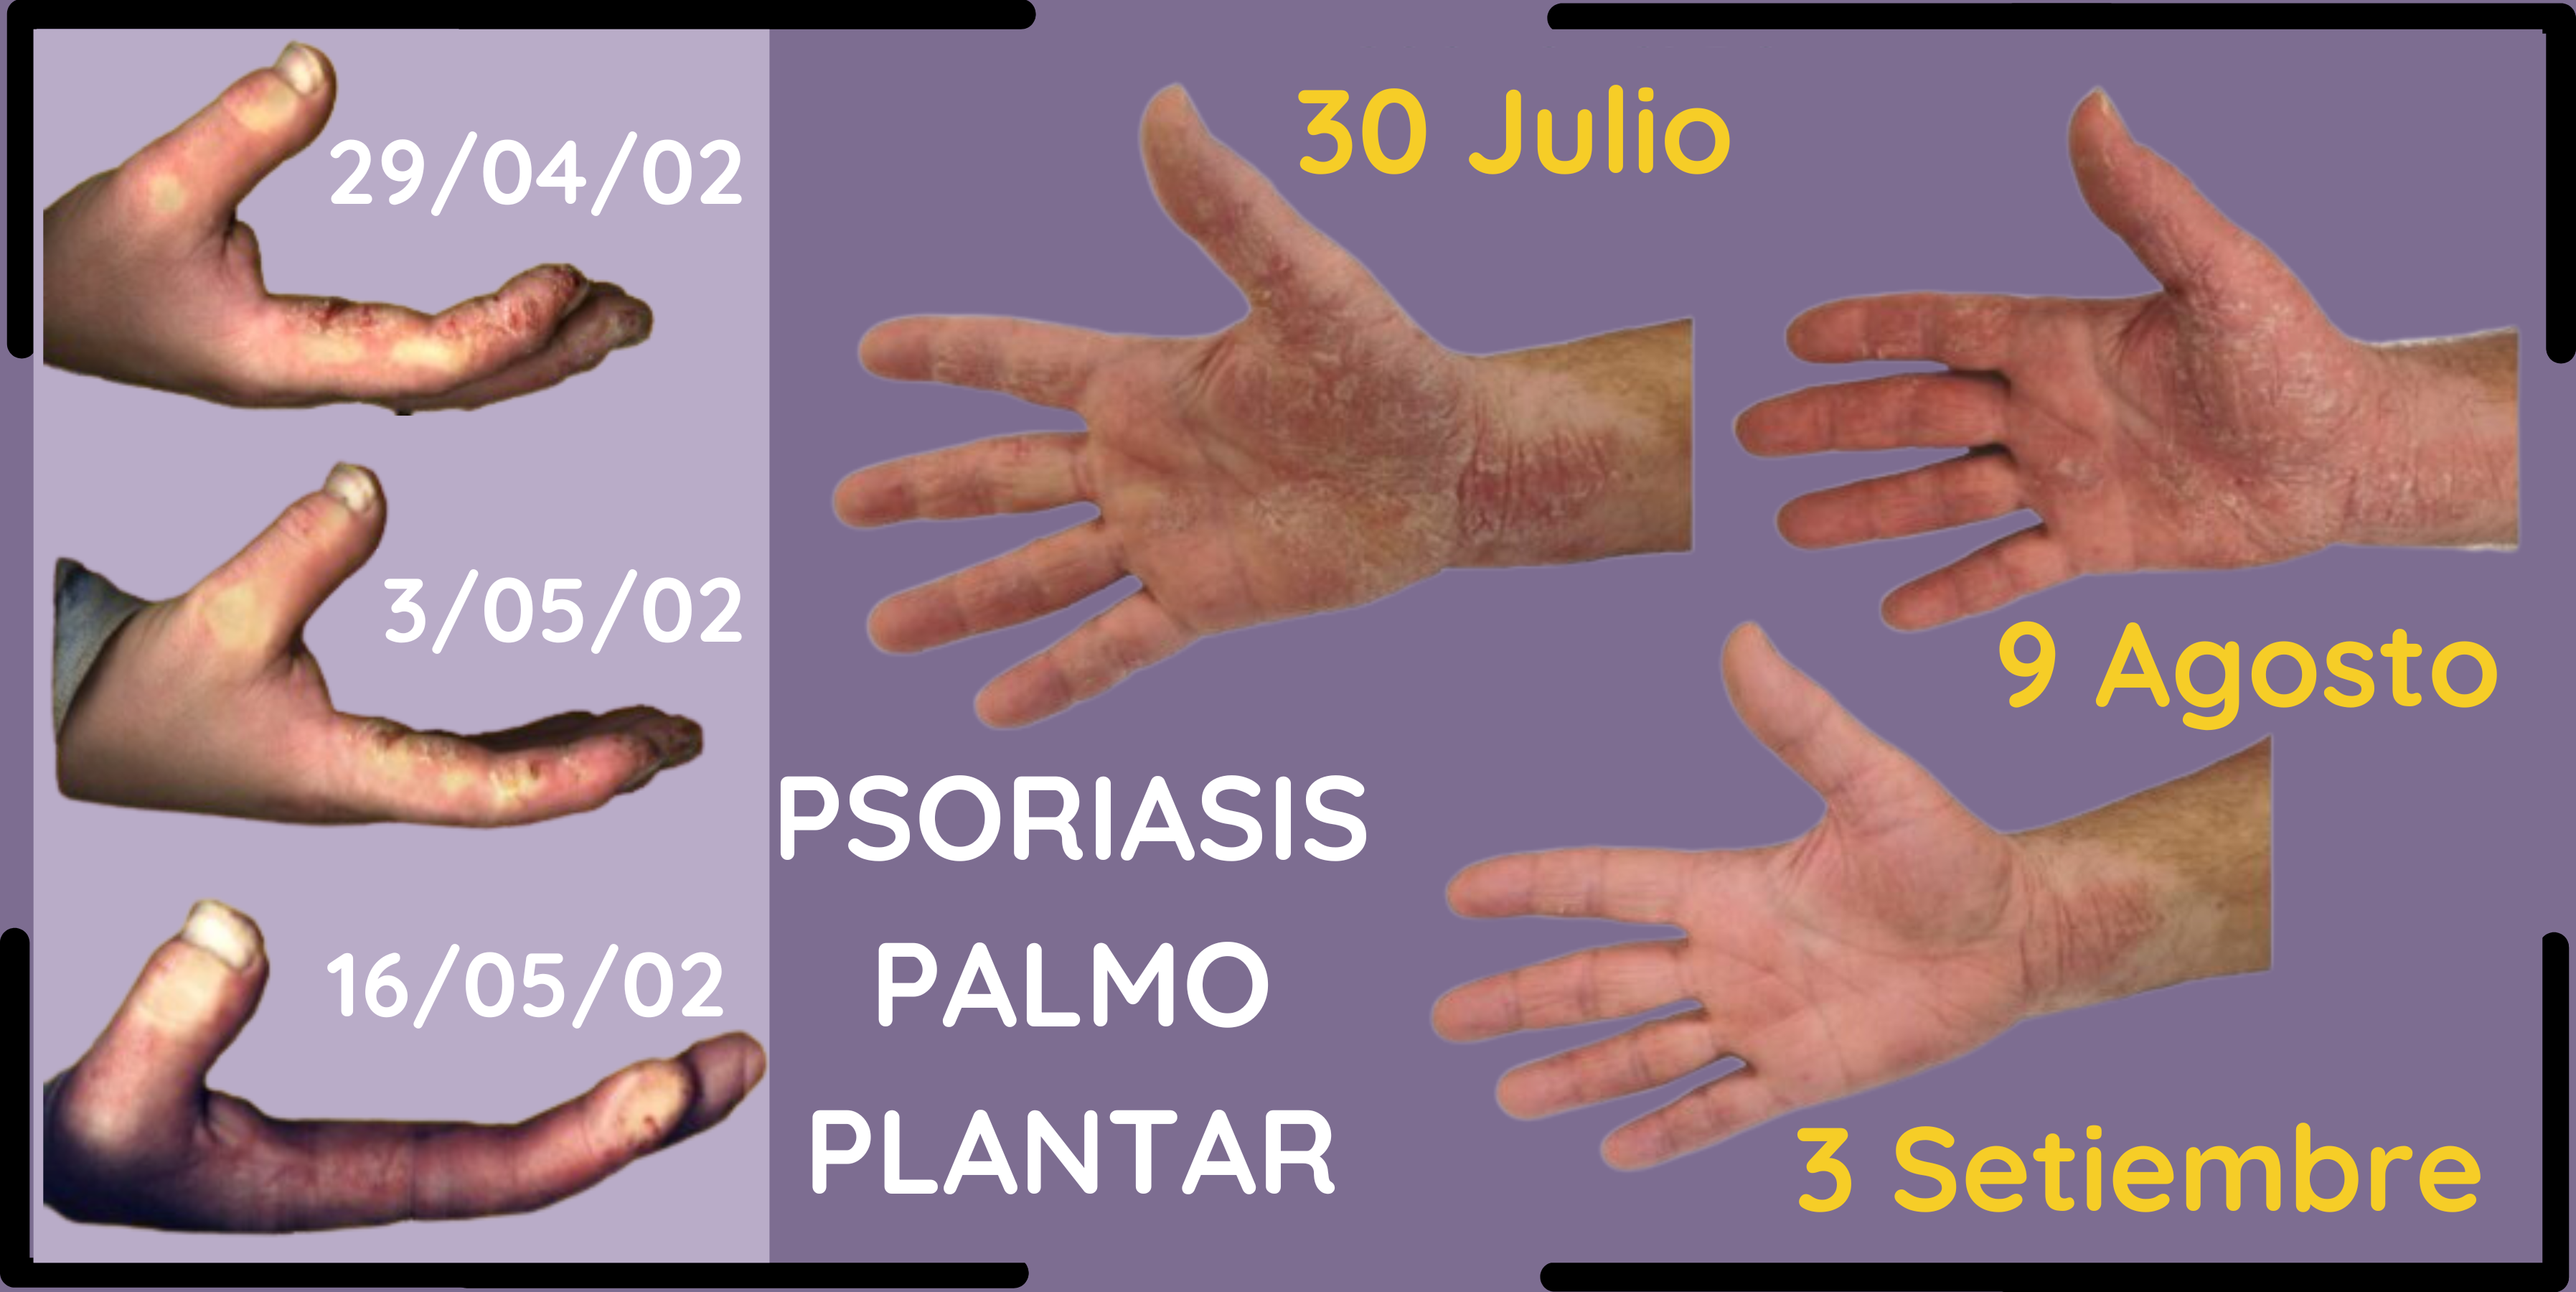 2 casos de psoriasis en palma de las manos